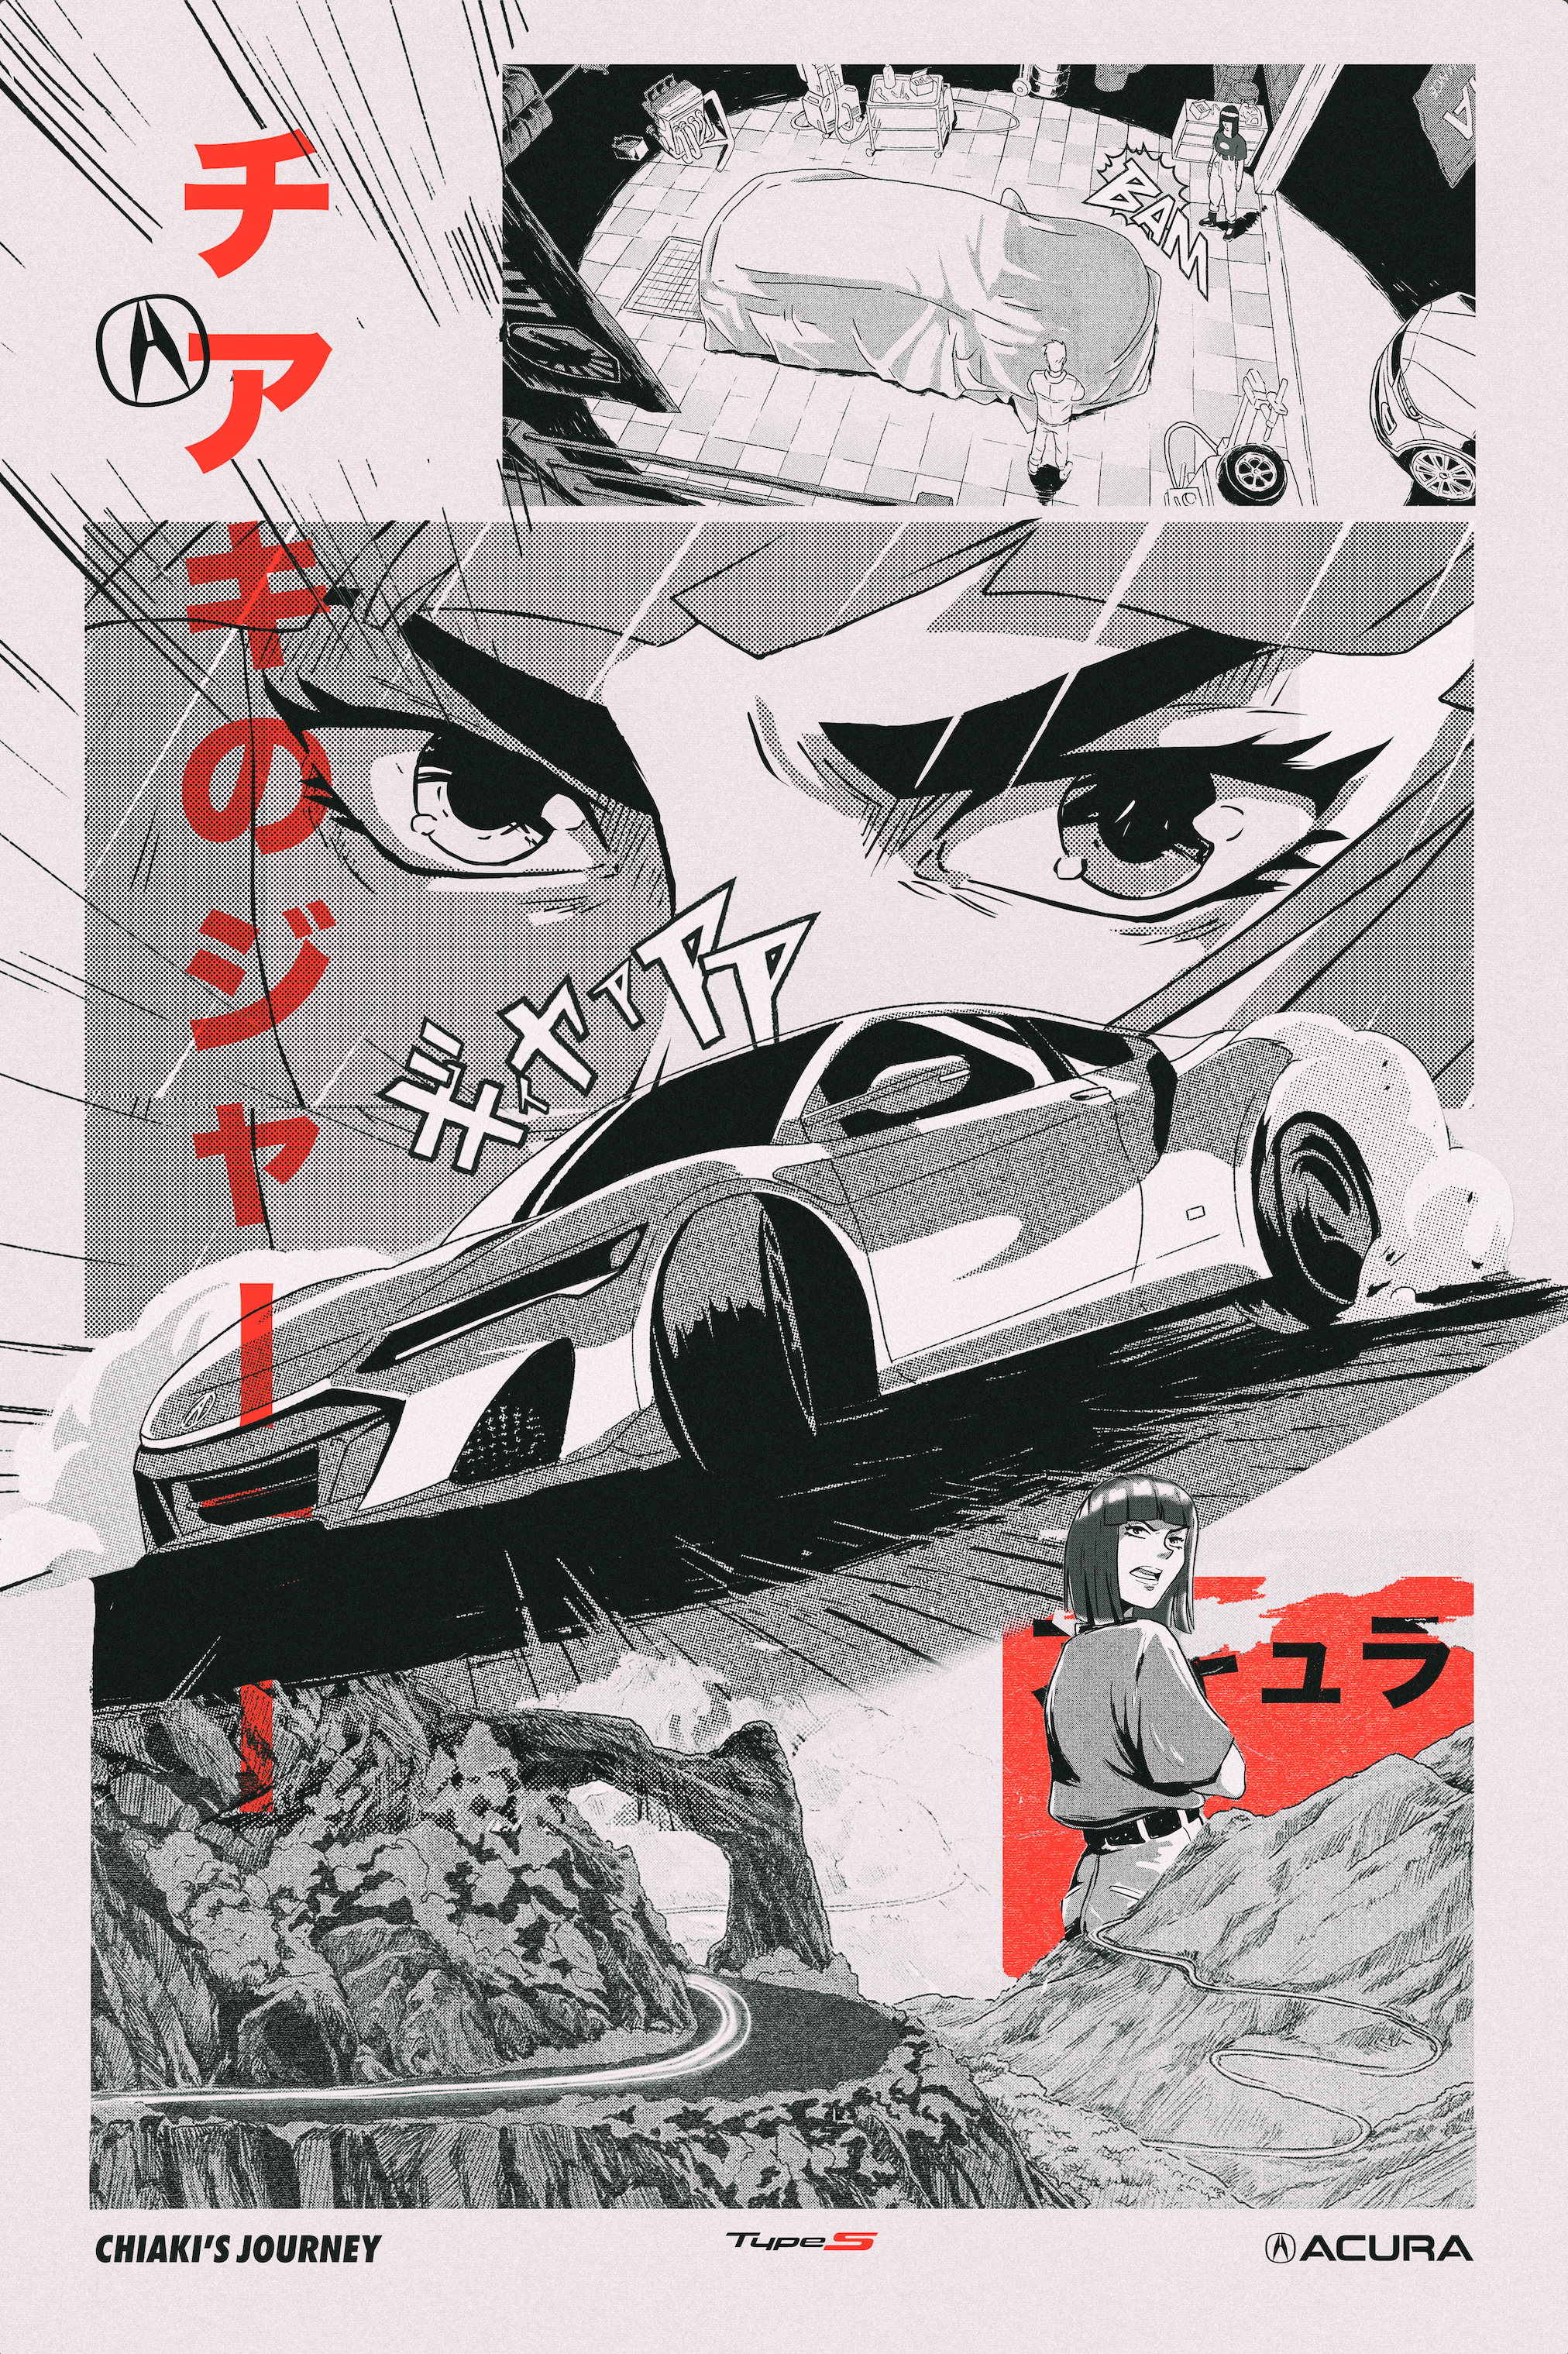 acura TLX Anime Style @gplongbeach Pace Car Vinyl Wrap Design I Created  🏁🙌 Follow @acuraconnected #kbmer #anime #wrap #design #tlx… | Instagram